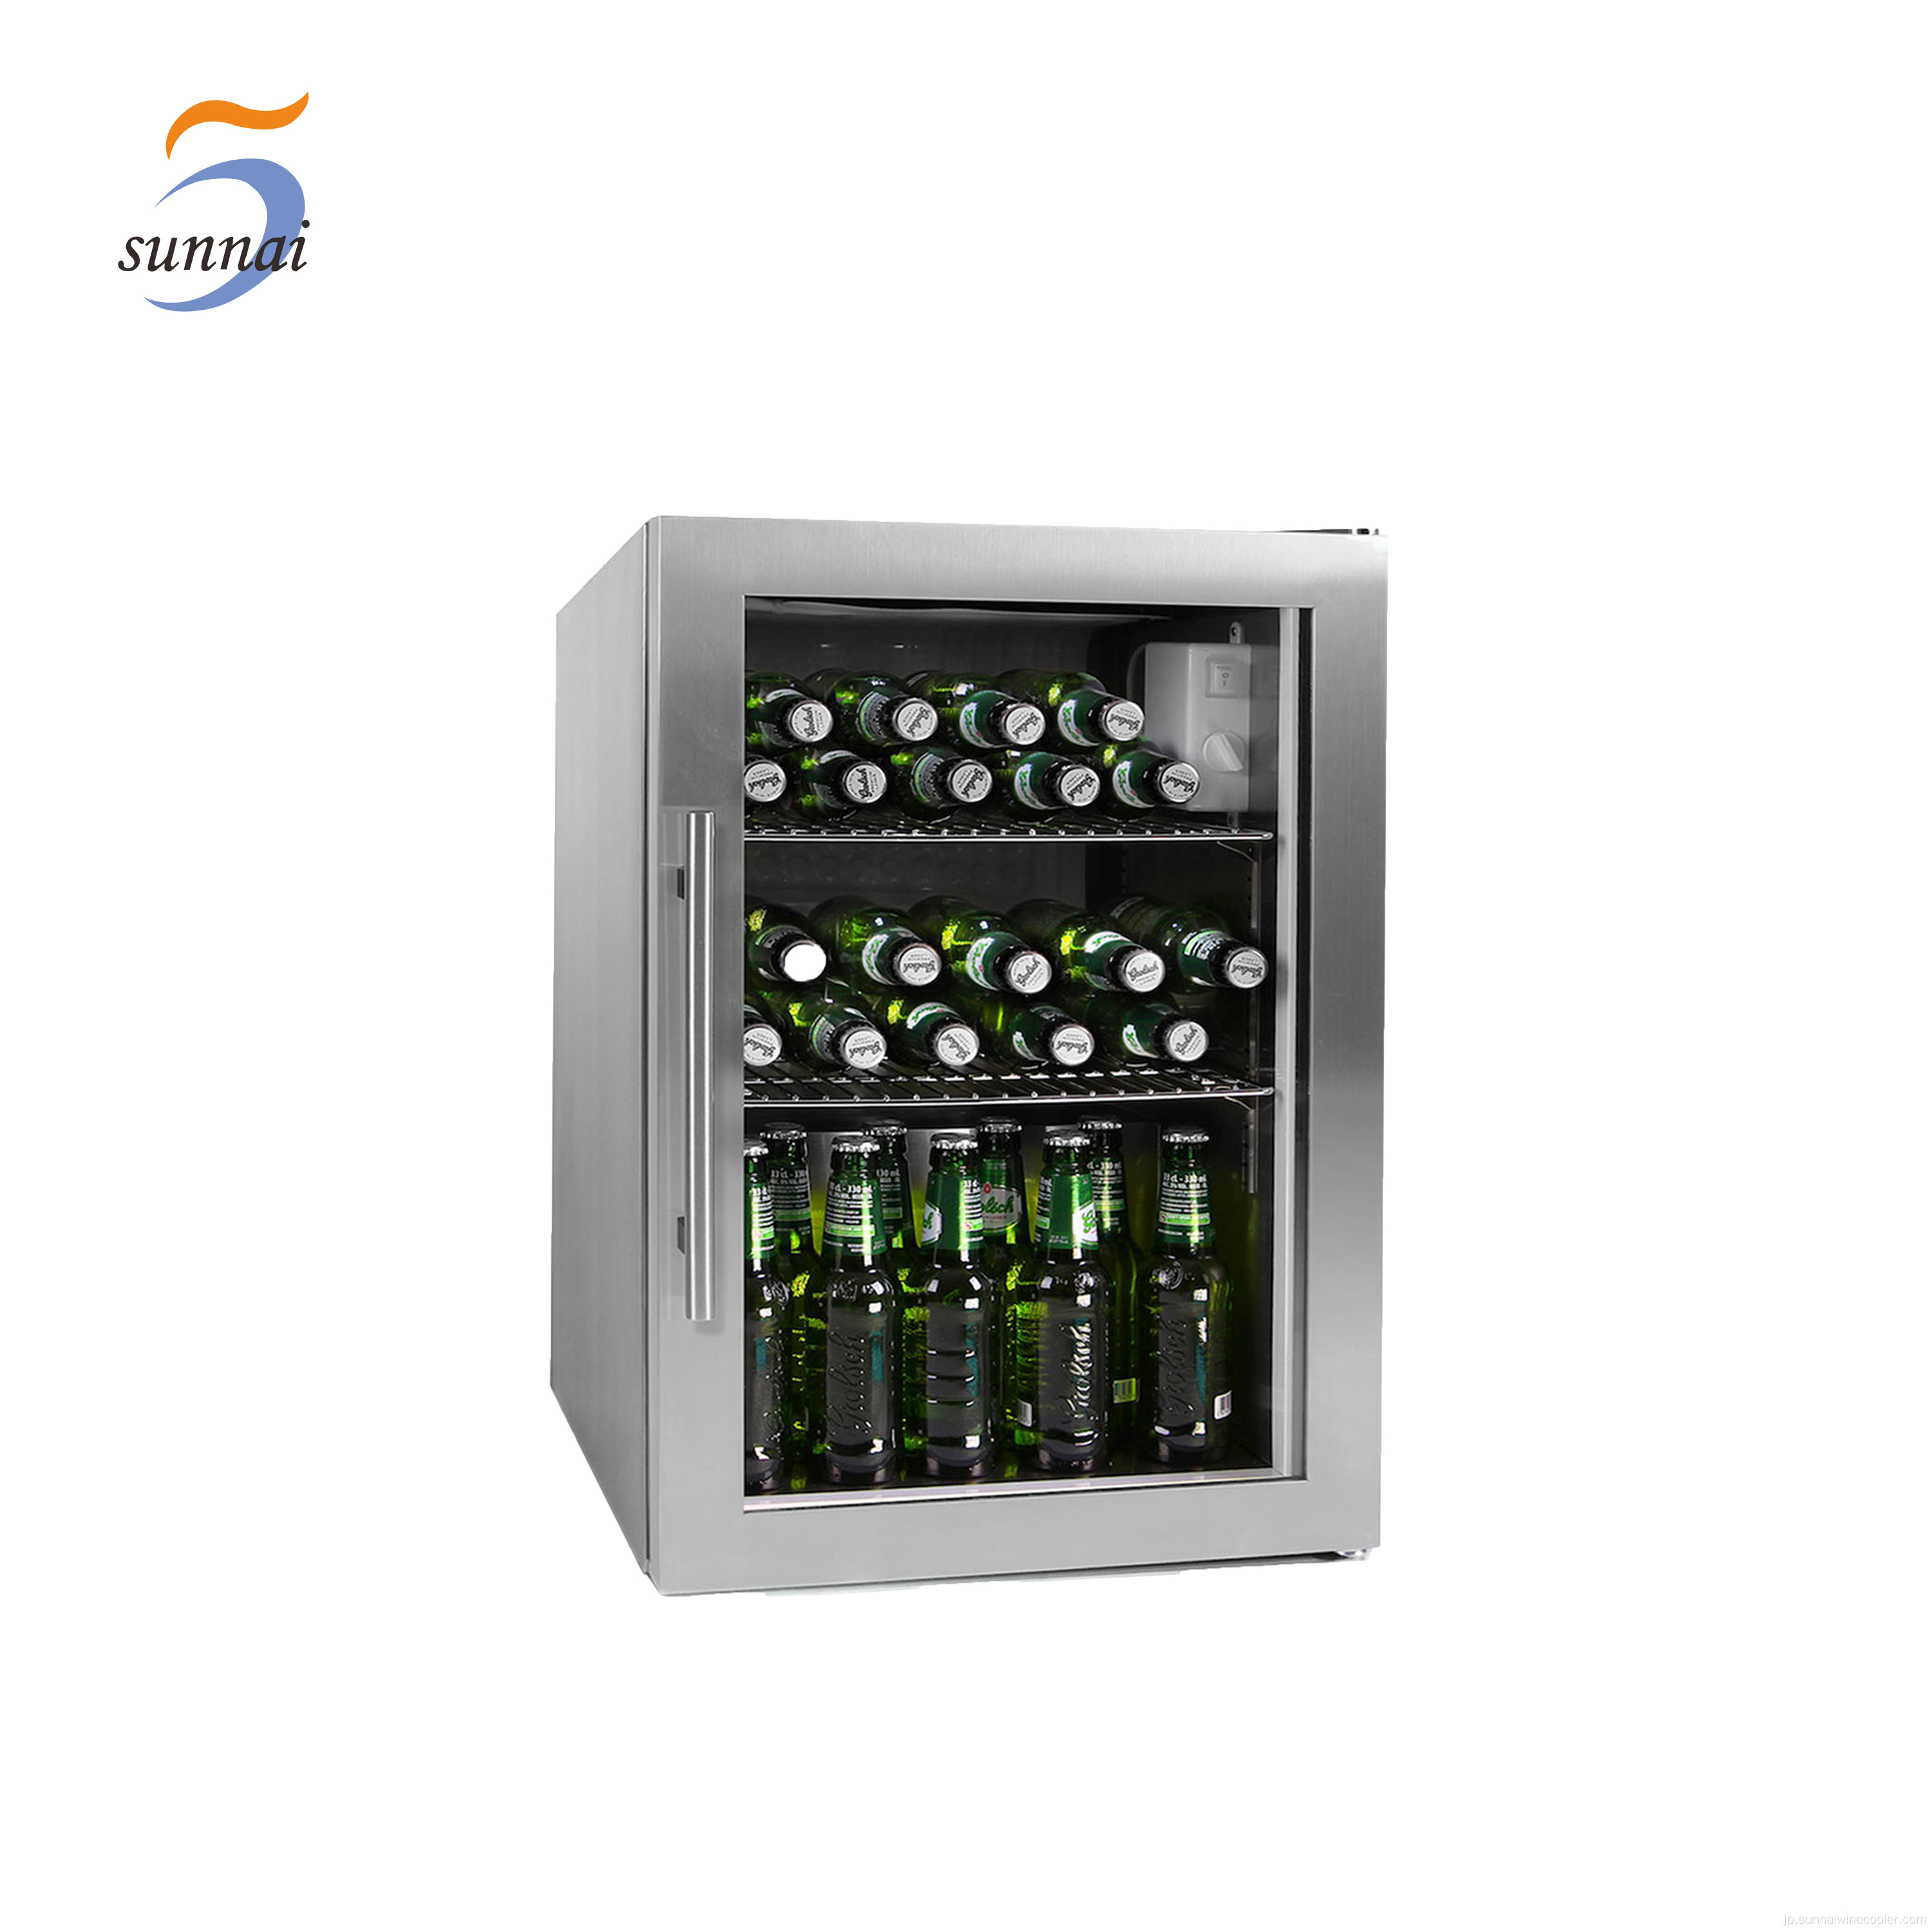 OEMコールドドリンク冷蔵庫シングルガラスドア冷蔵庫